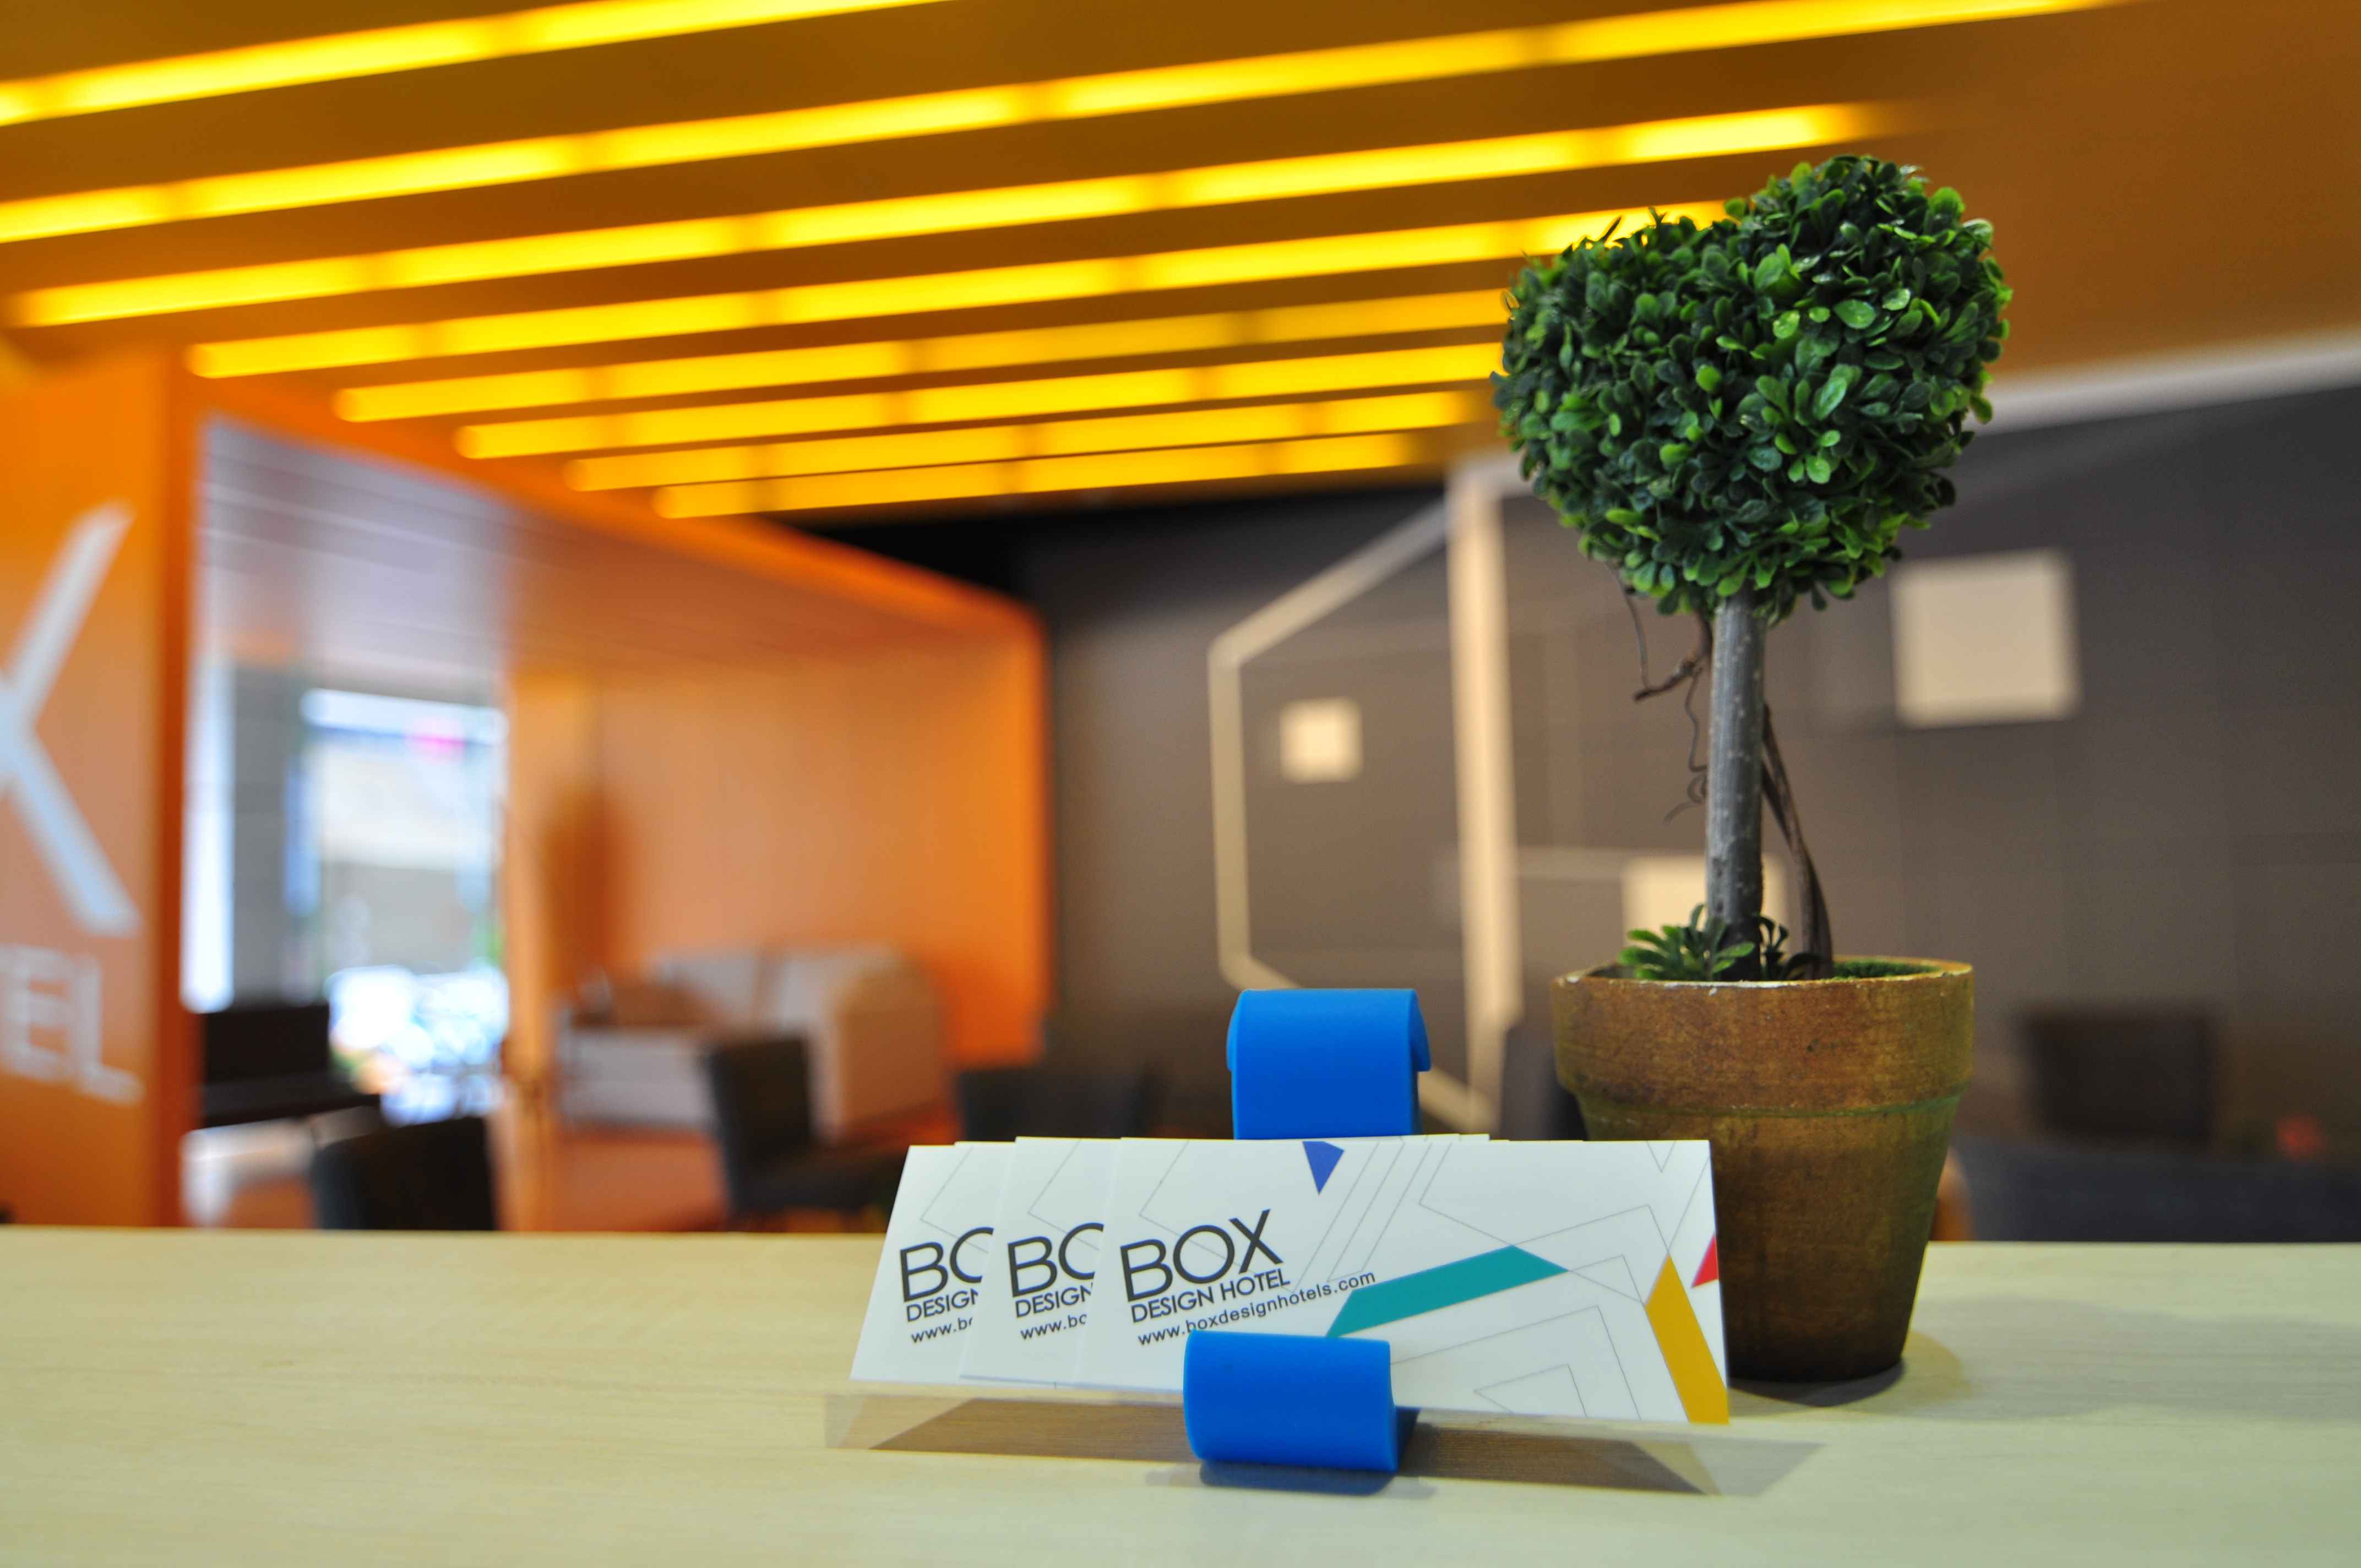 博客創意旅店大廳&空間
Box Design Hotel-Lobby&Space